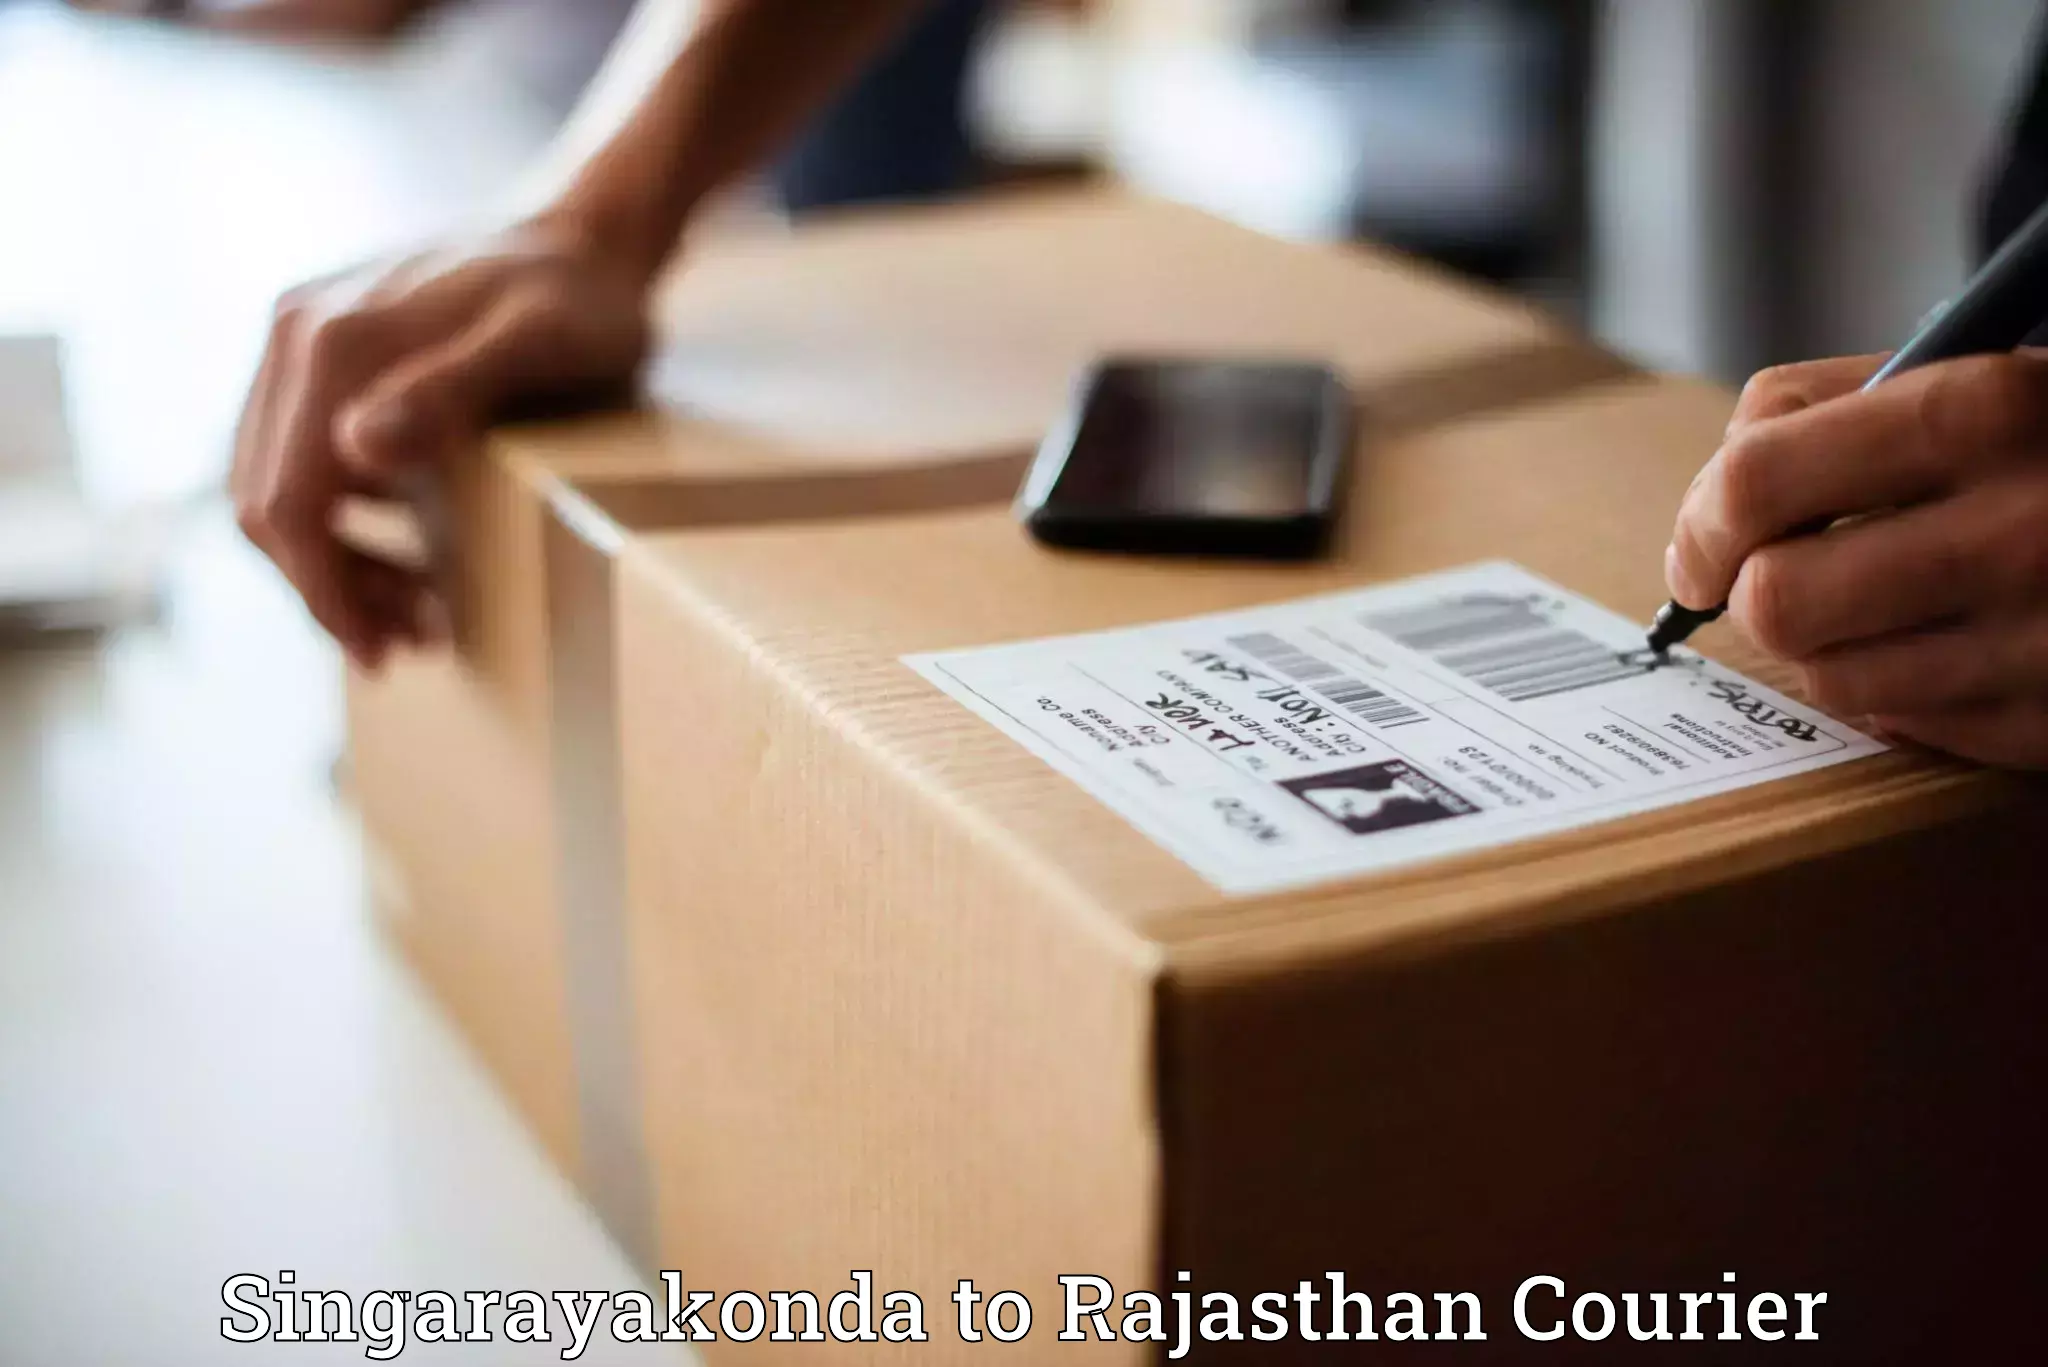 Express shipping in Singarayakonda to Rajasthan